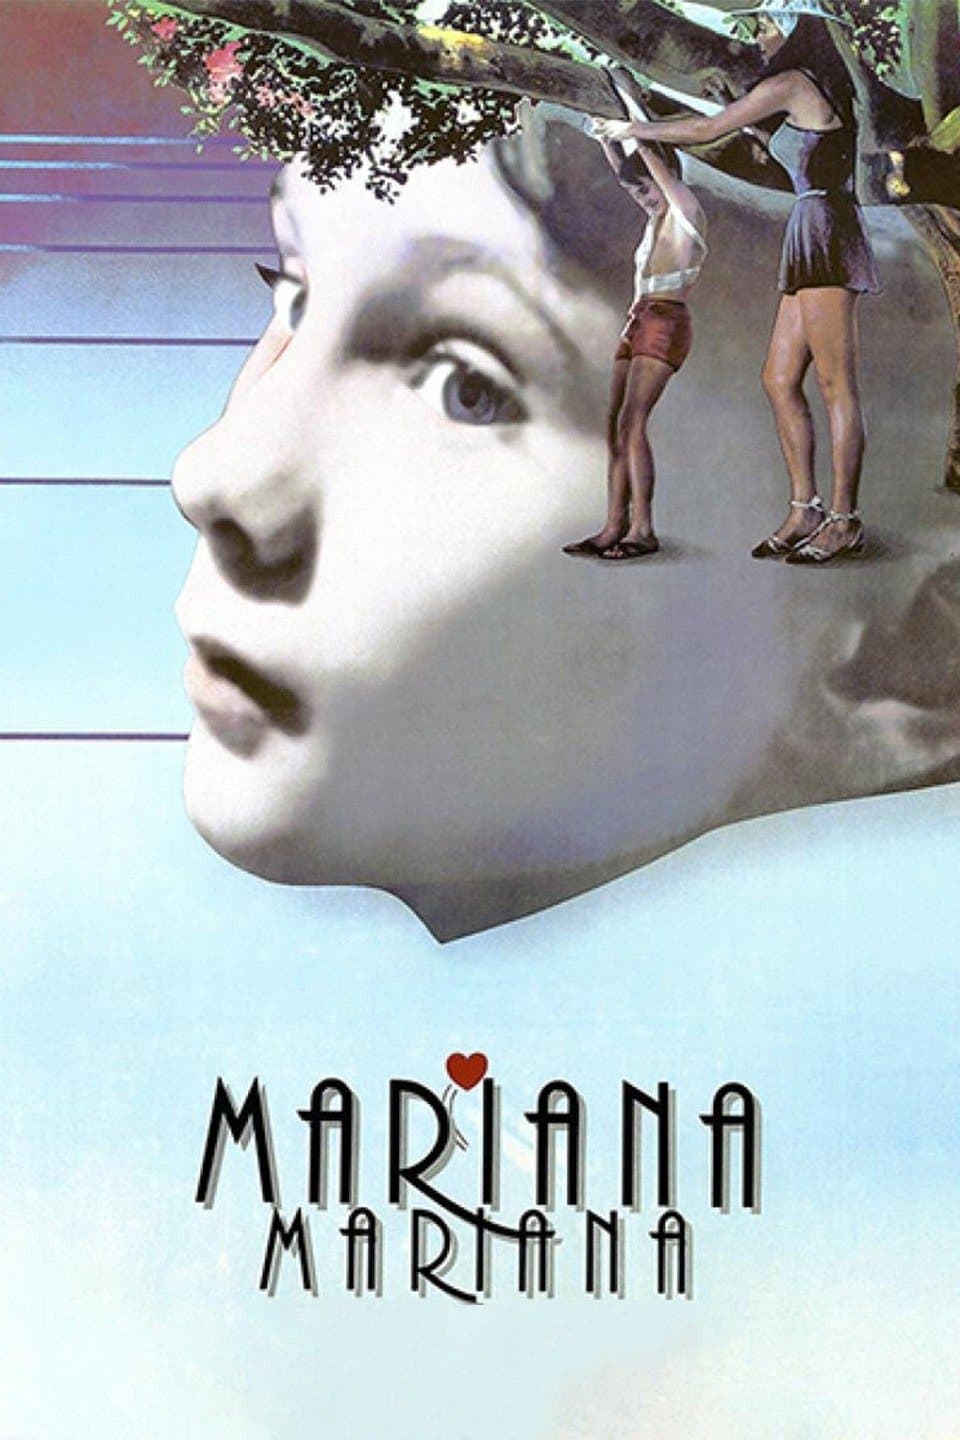 Mariana, Mariana (1987)